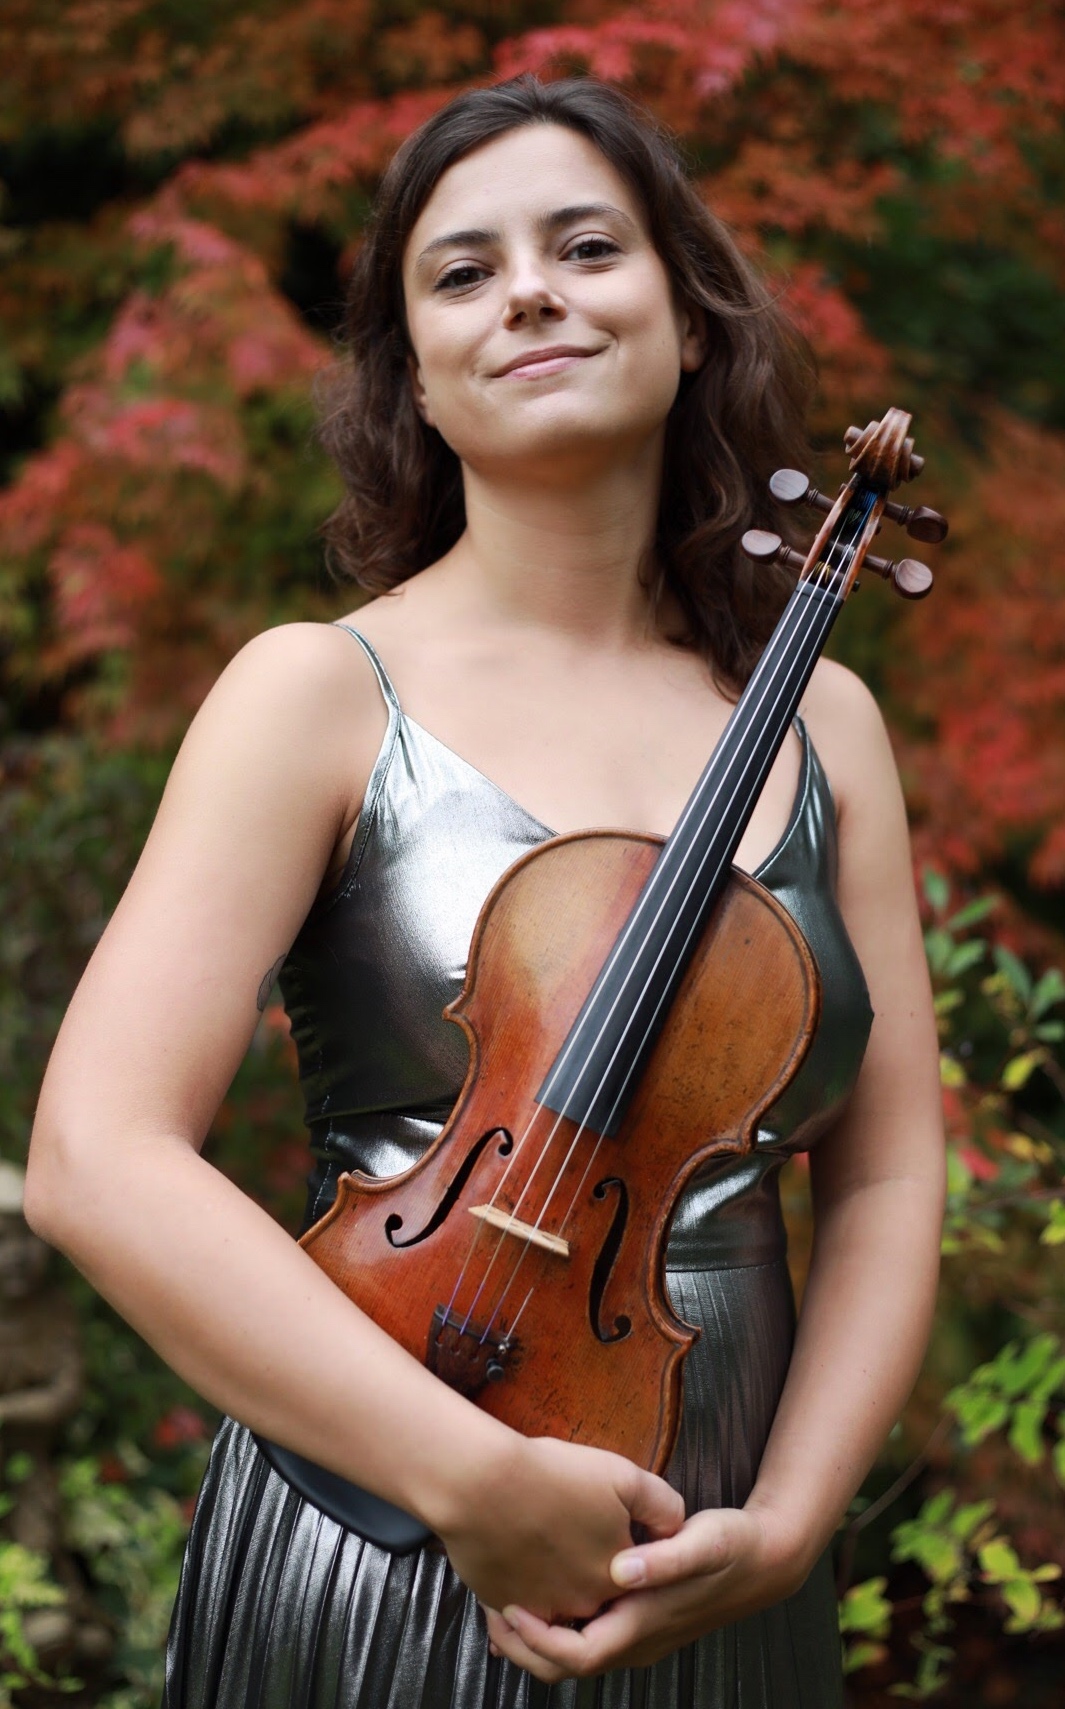 Jaga Klimaszewska (violin)